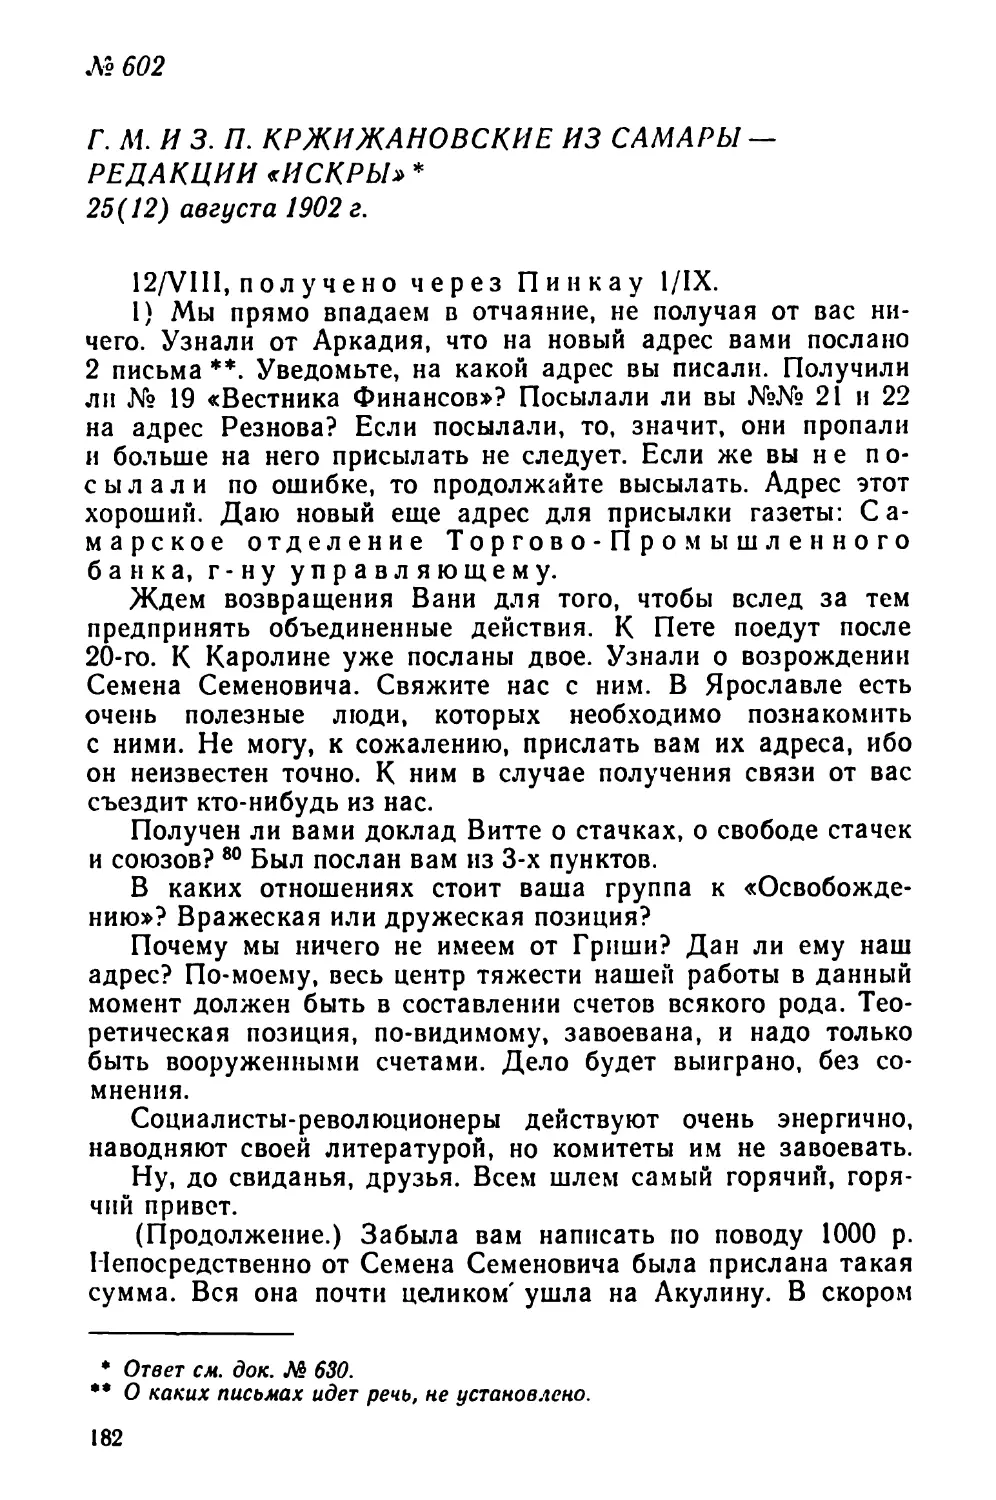 № 602 Г. М. и 3. П. Кржижановские из Самары — редакции «Искры». 25 августа